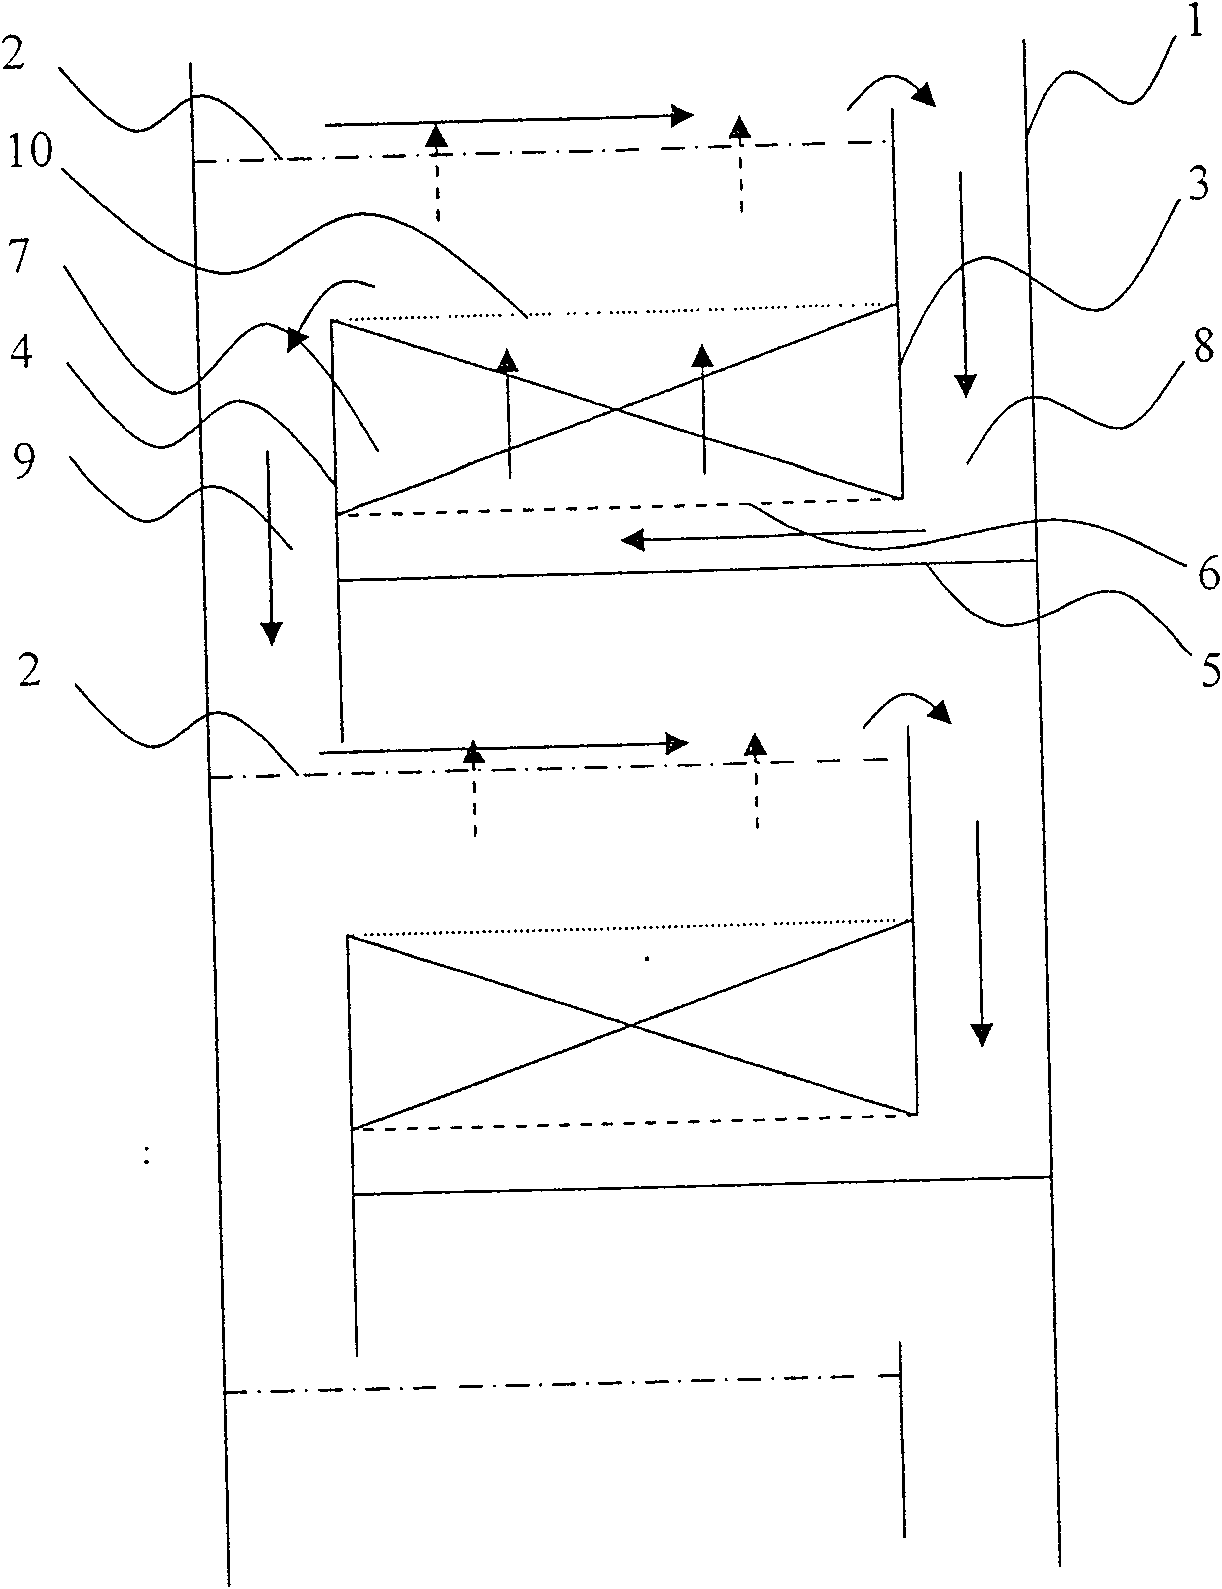 Catalytic distillation tower reaction segment structrue